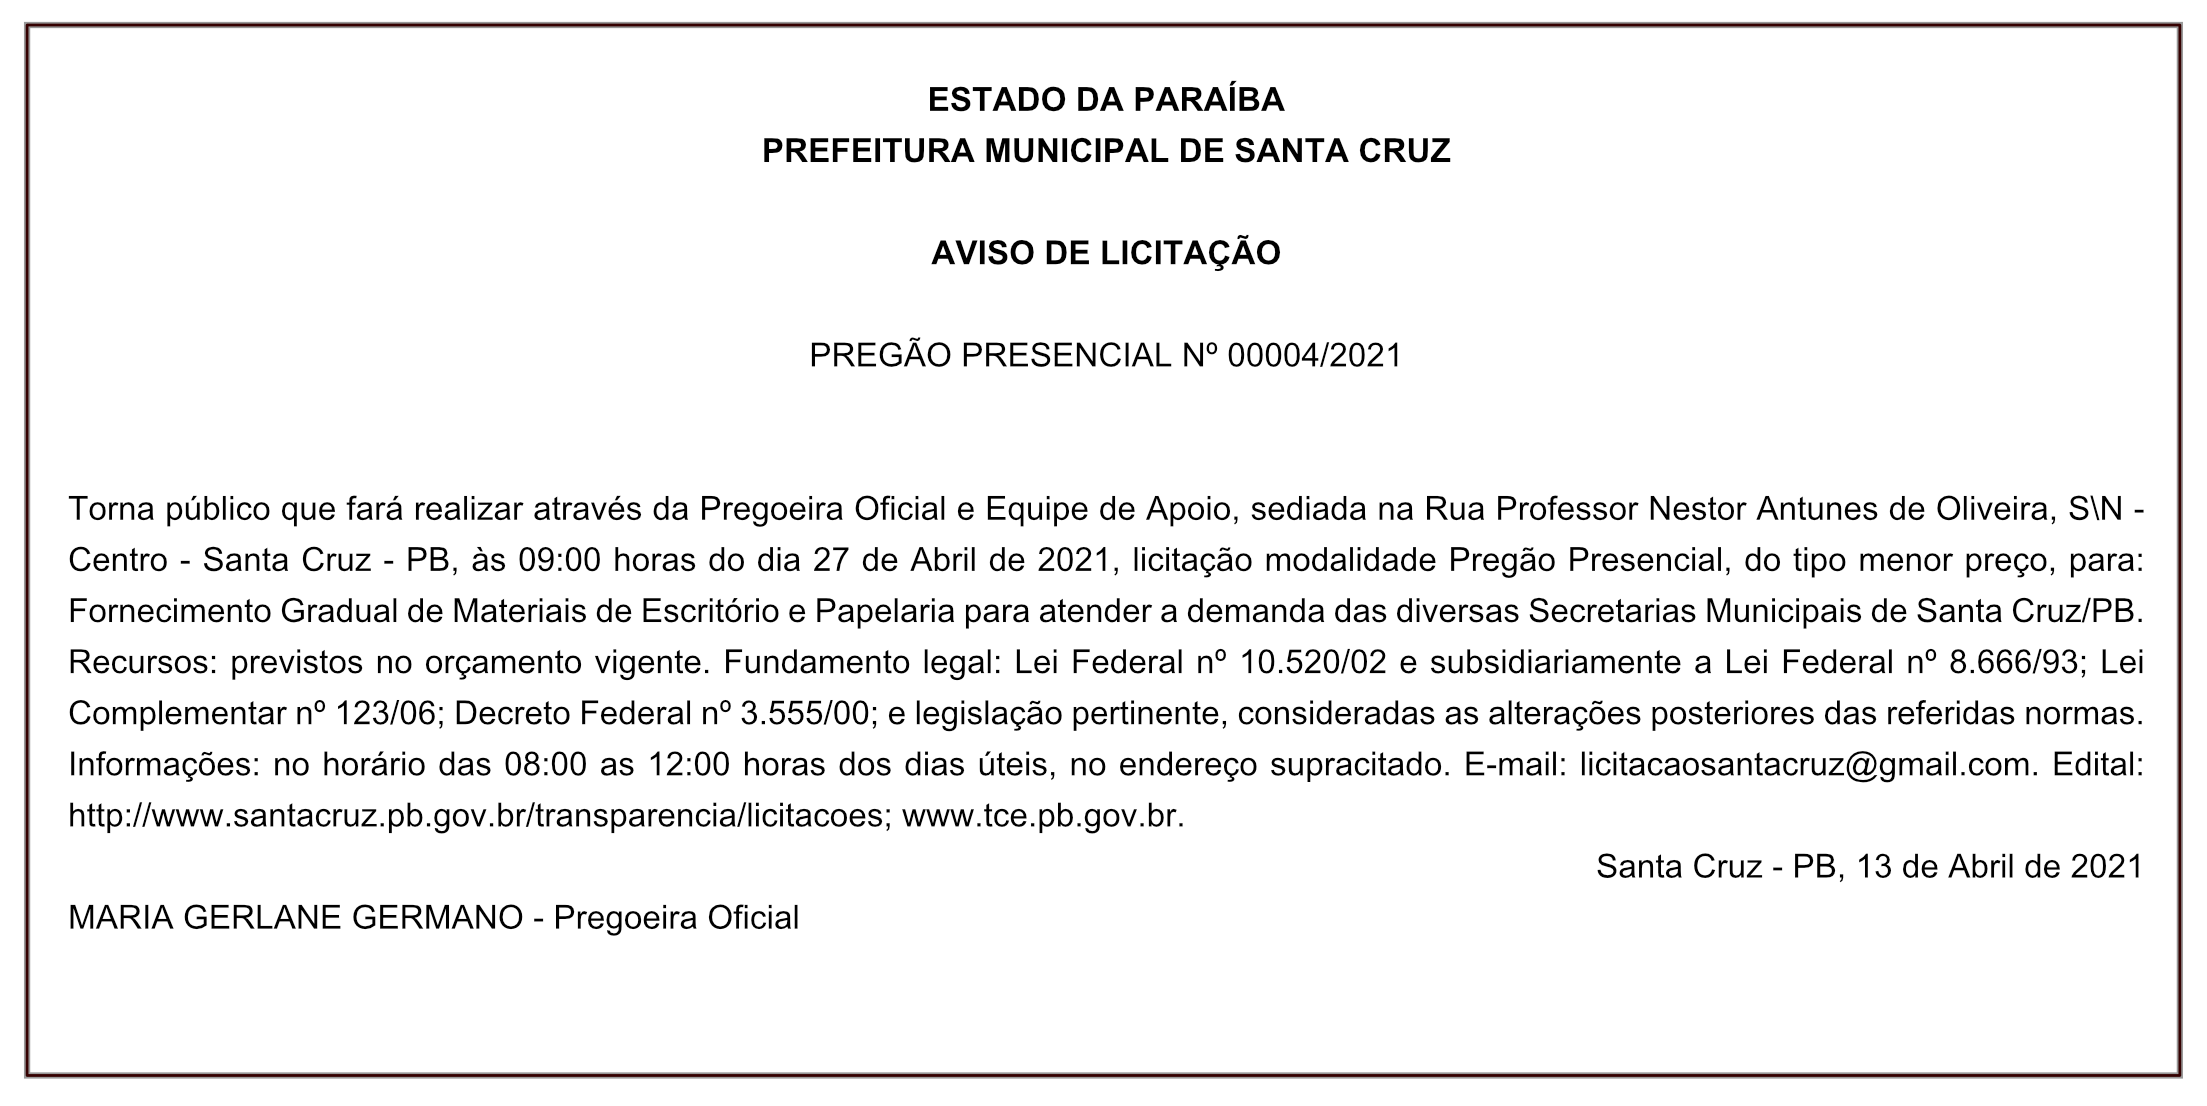 PREFEITURA MUNICIPAL DE SANTA CRUZ – AVISO DE LICITAÇÃO – PREGÃO PRESENCIAL Nº 00004/2021